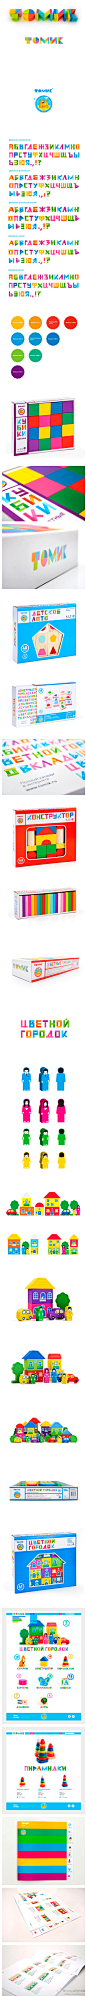 Tomik（Томик）是一个俄罗斯的木制儿童玩具的品牌，主要出品儿童积木、拼版、玩偶等等。最近，Province Design Studio为Tomik设计了新Logo，Logo想清晰表达两点：一、出品的儿童玩具是木制的，二、出品的儿童玩具很好玩；除了Logo，设计公司也定制了一套可爱的配套字体。http://t.cn/zWXCOjp